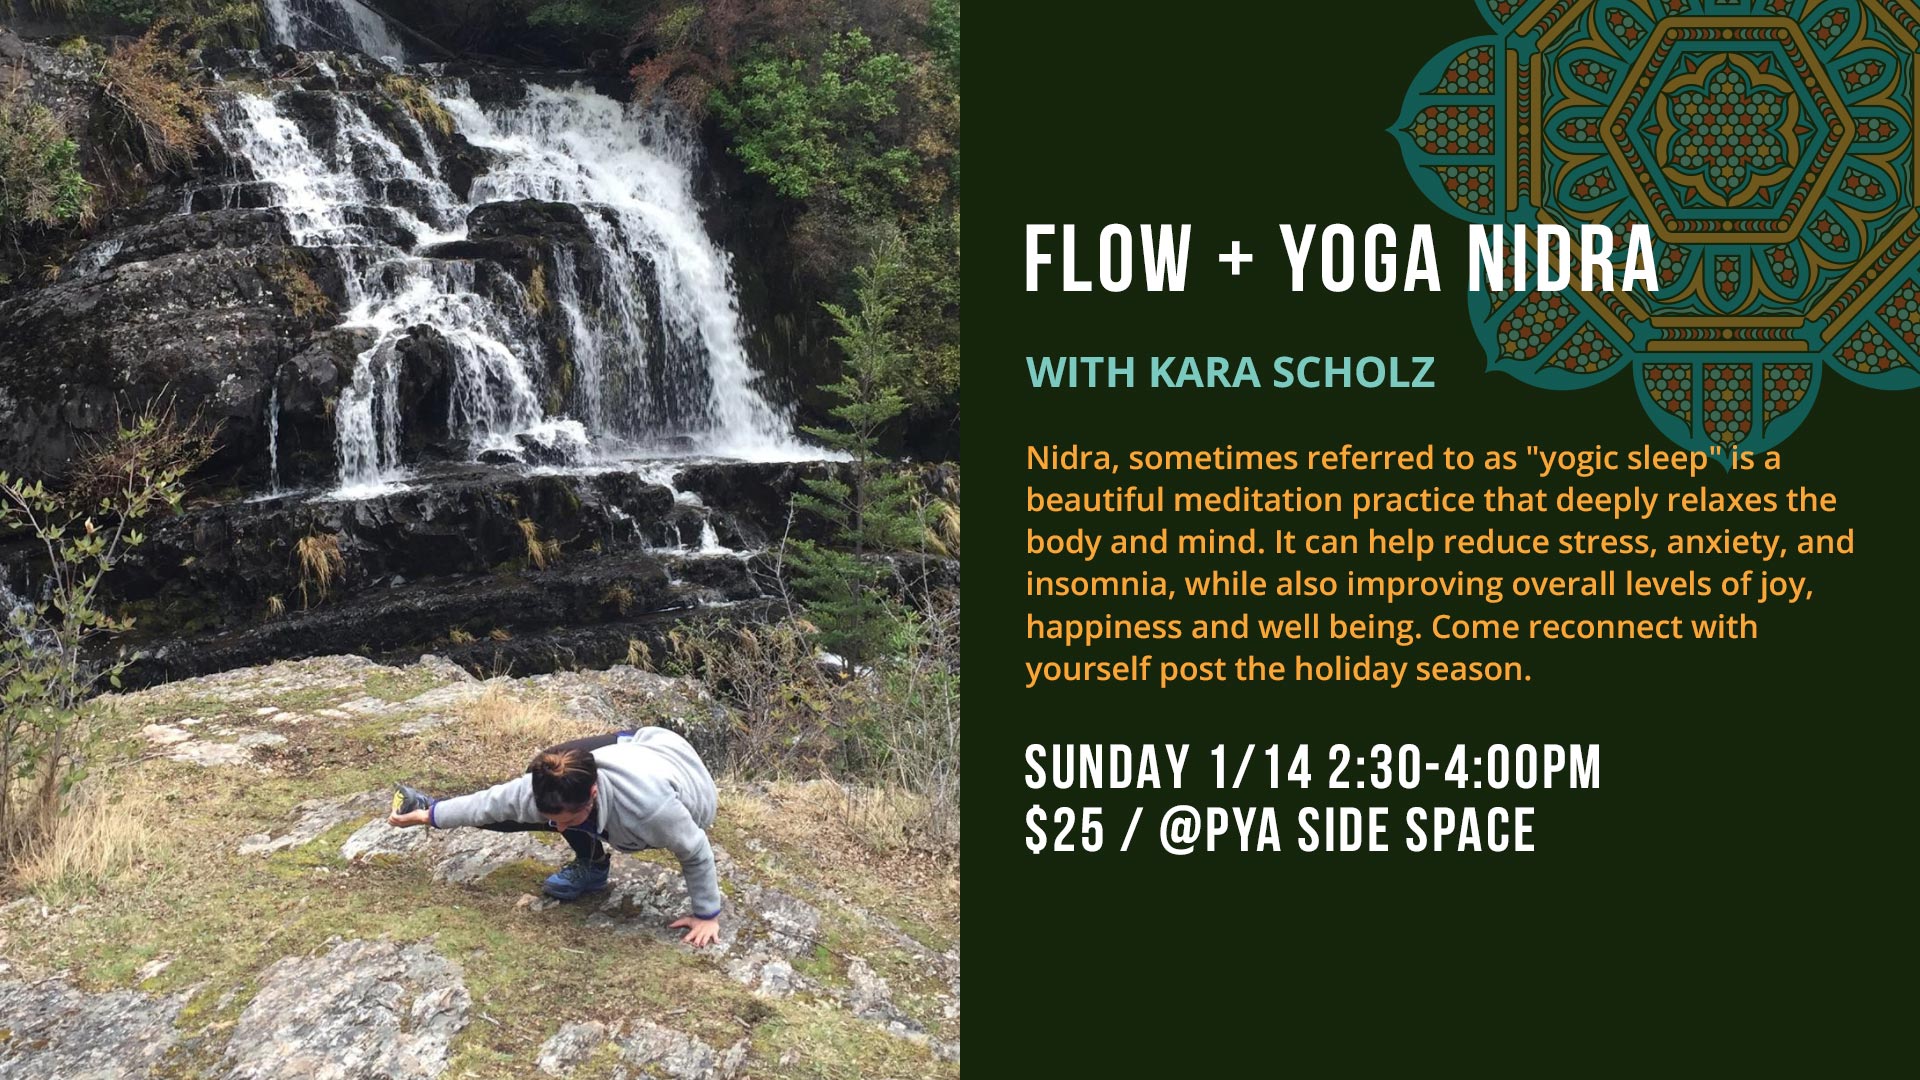 Flow and Yoga Nidra at Practice Yoga Austin